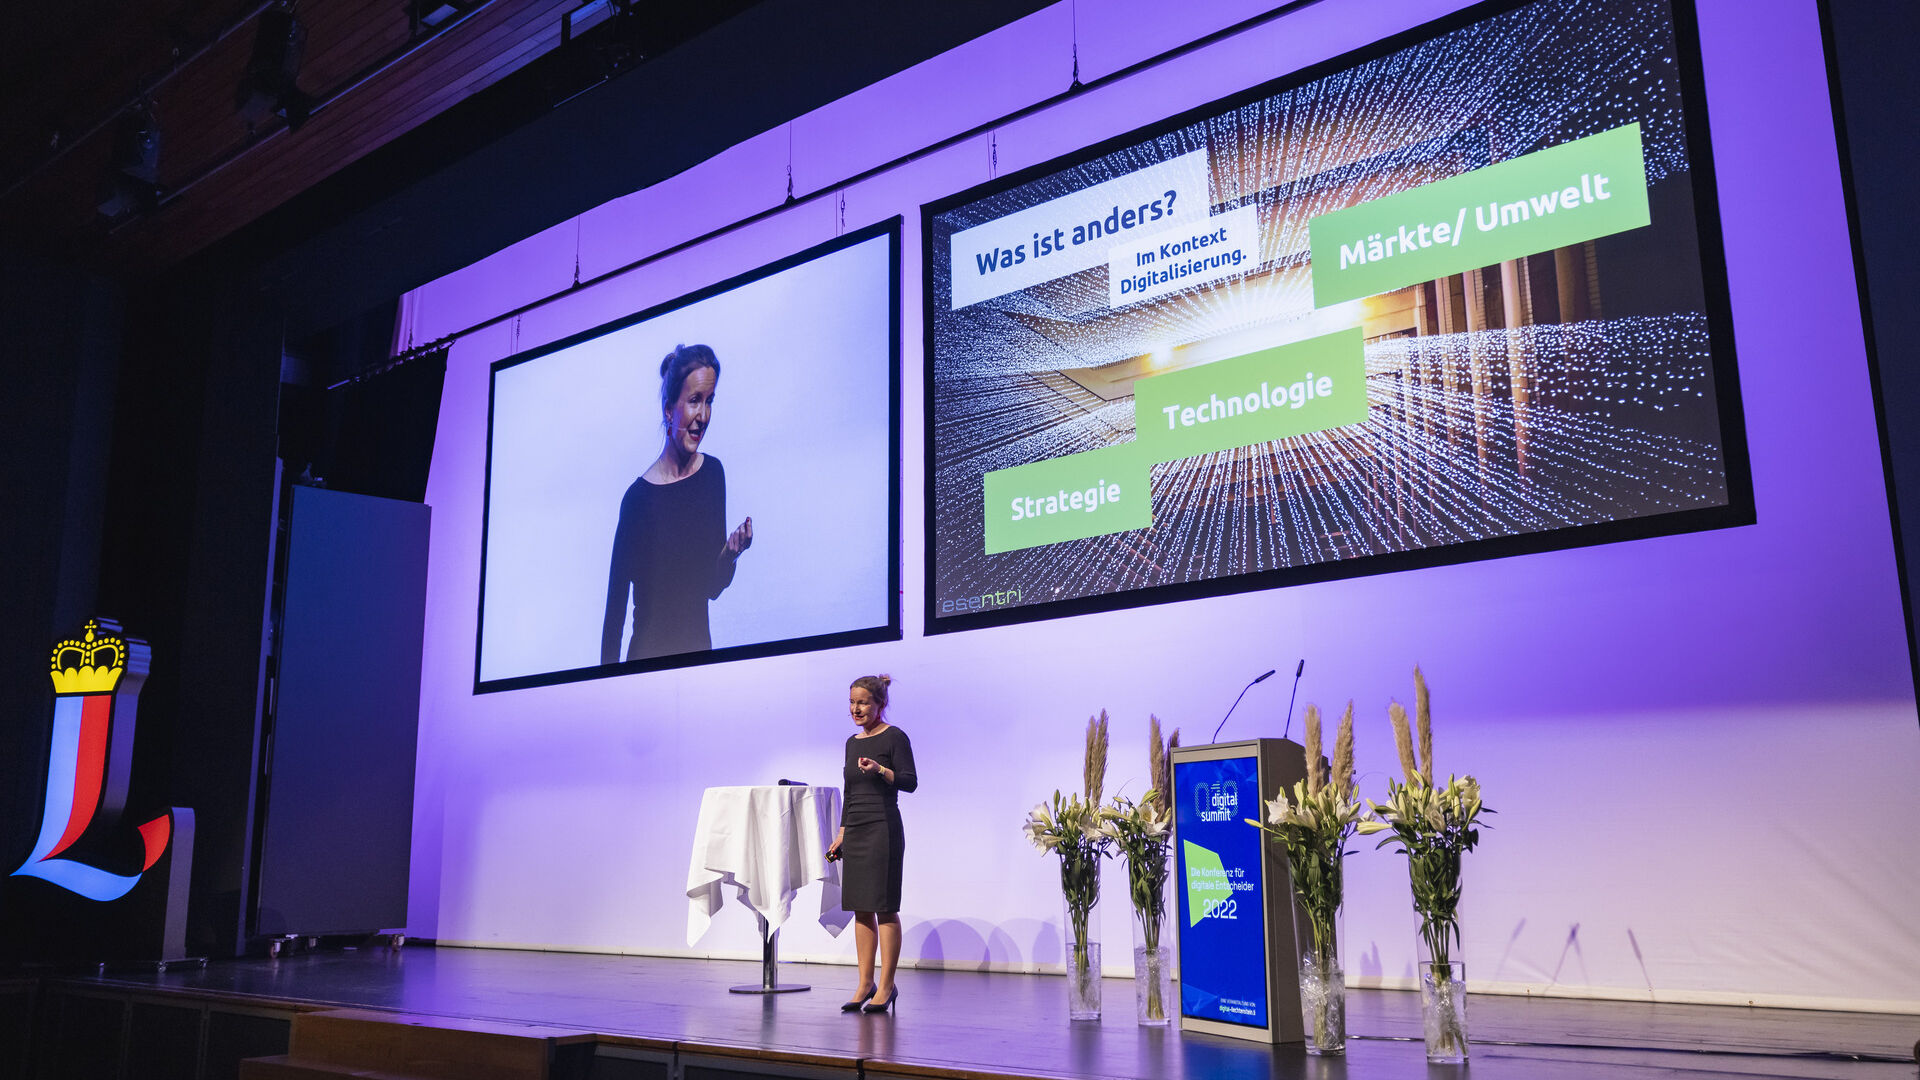 La edición 2022 del evento “Digital Summit” en Vaduz